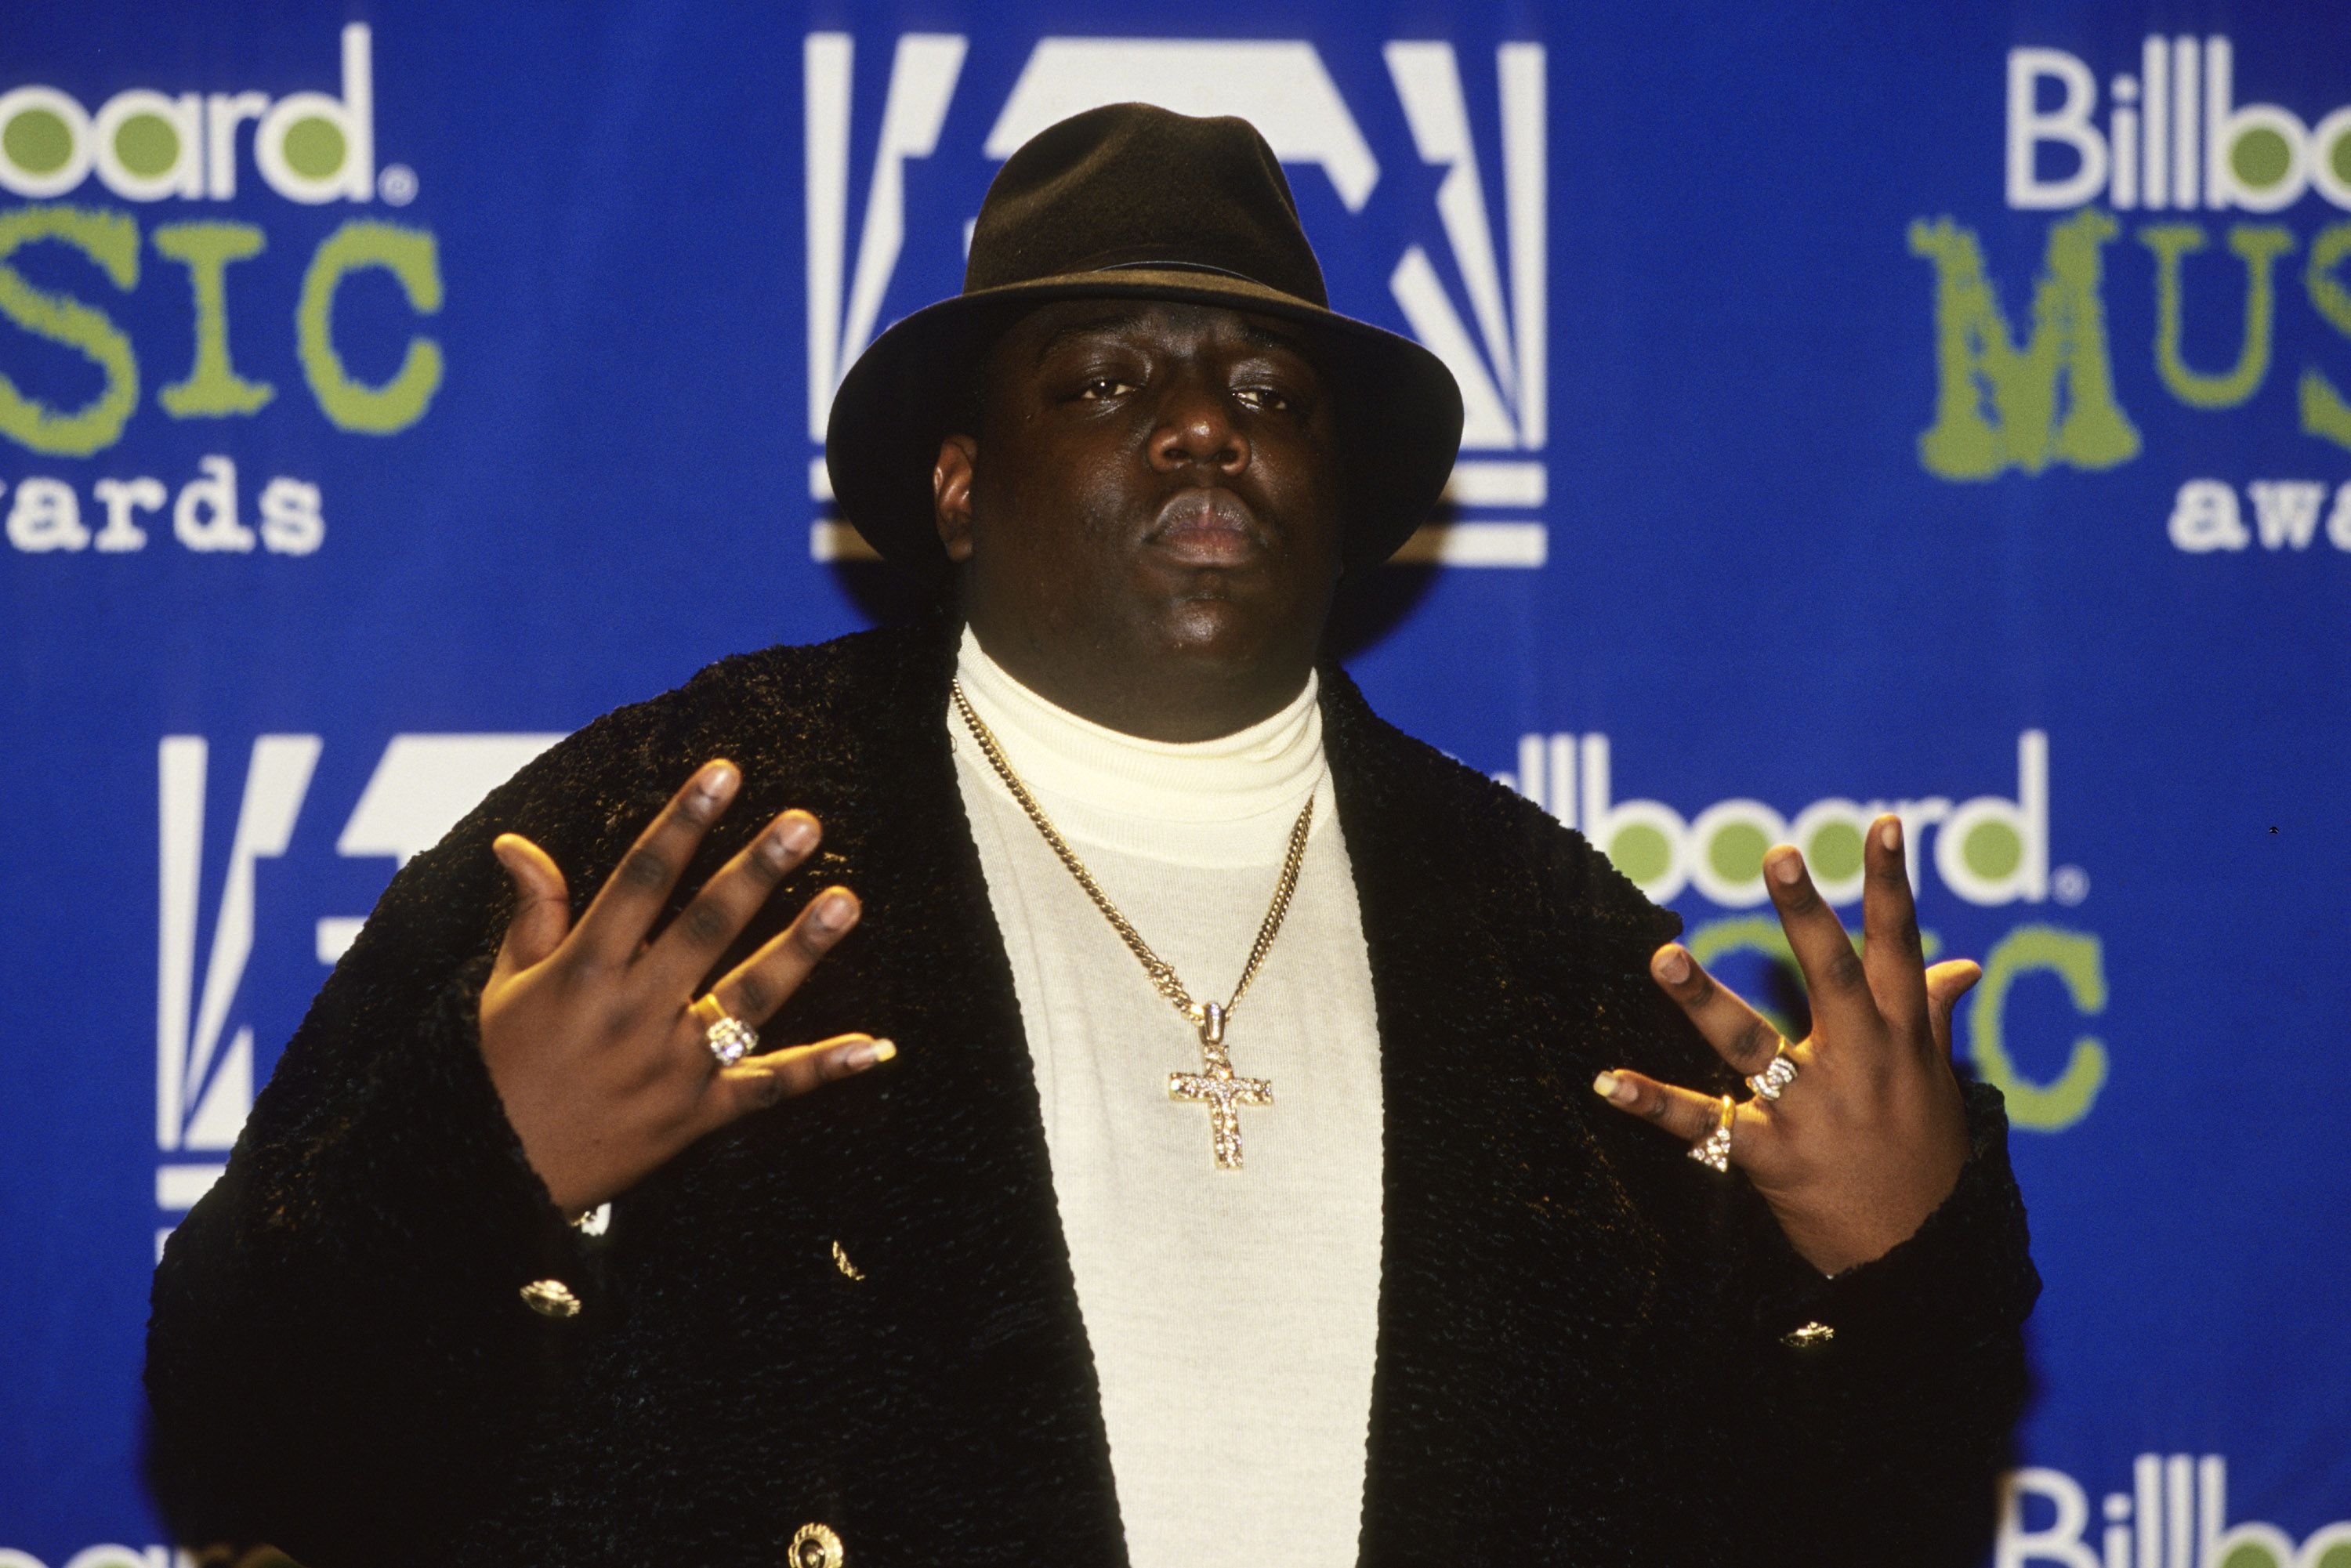 Notorious B.I.G. en los premios Billboard Music Awards, en Nueva York el 6 de diciembre de 1996 | Foto: Getty Images